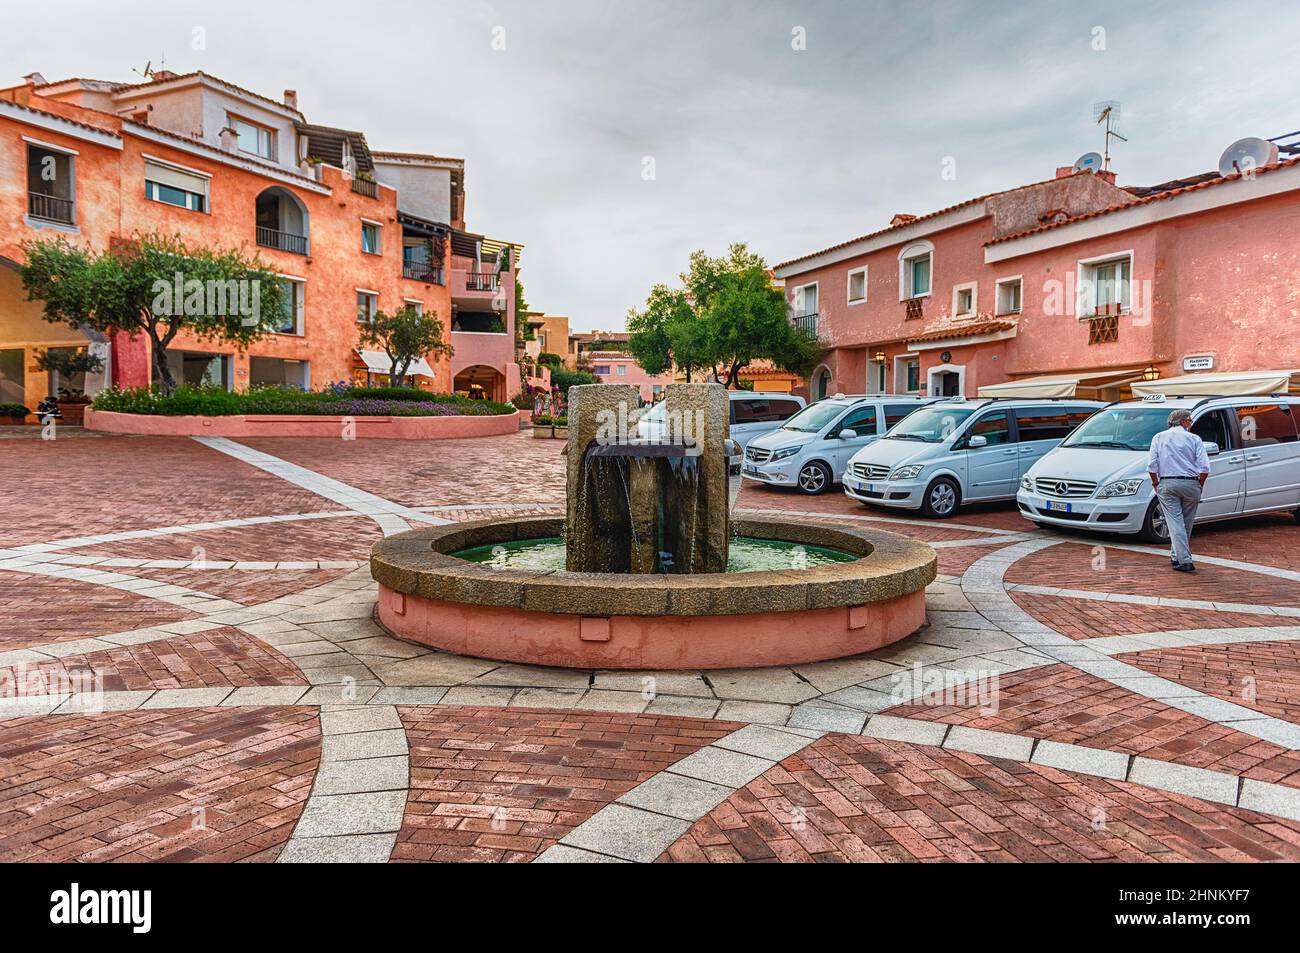 Piazzetta del Cervo, square located in Porto Cervo, Sardinia, Italy Stock Photo